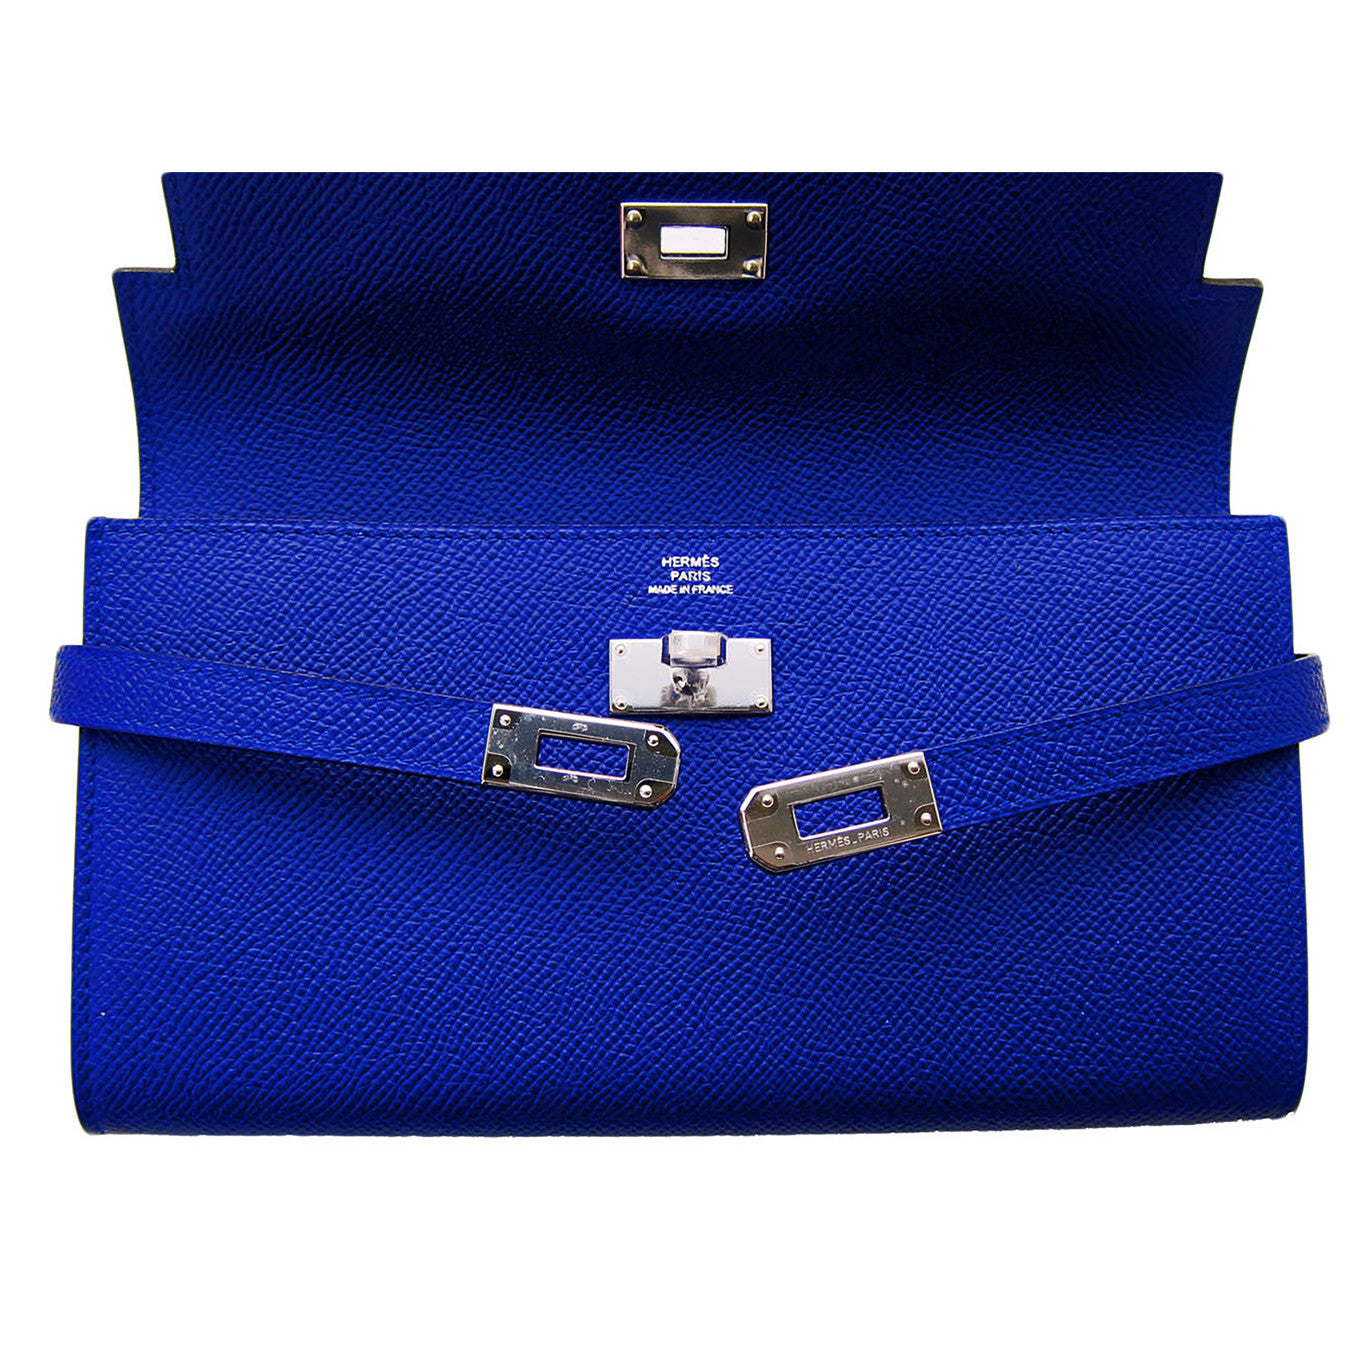 Electric Blue Balenciaga City bag